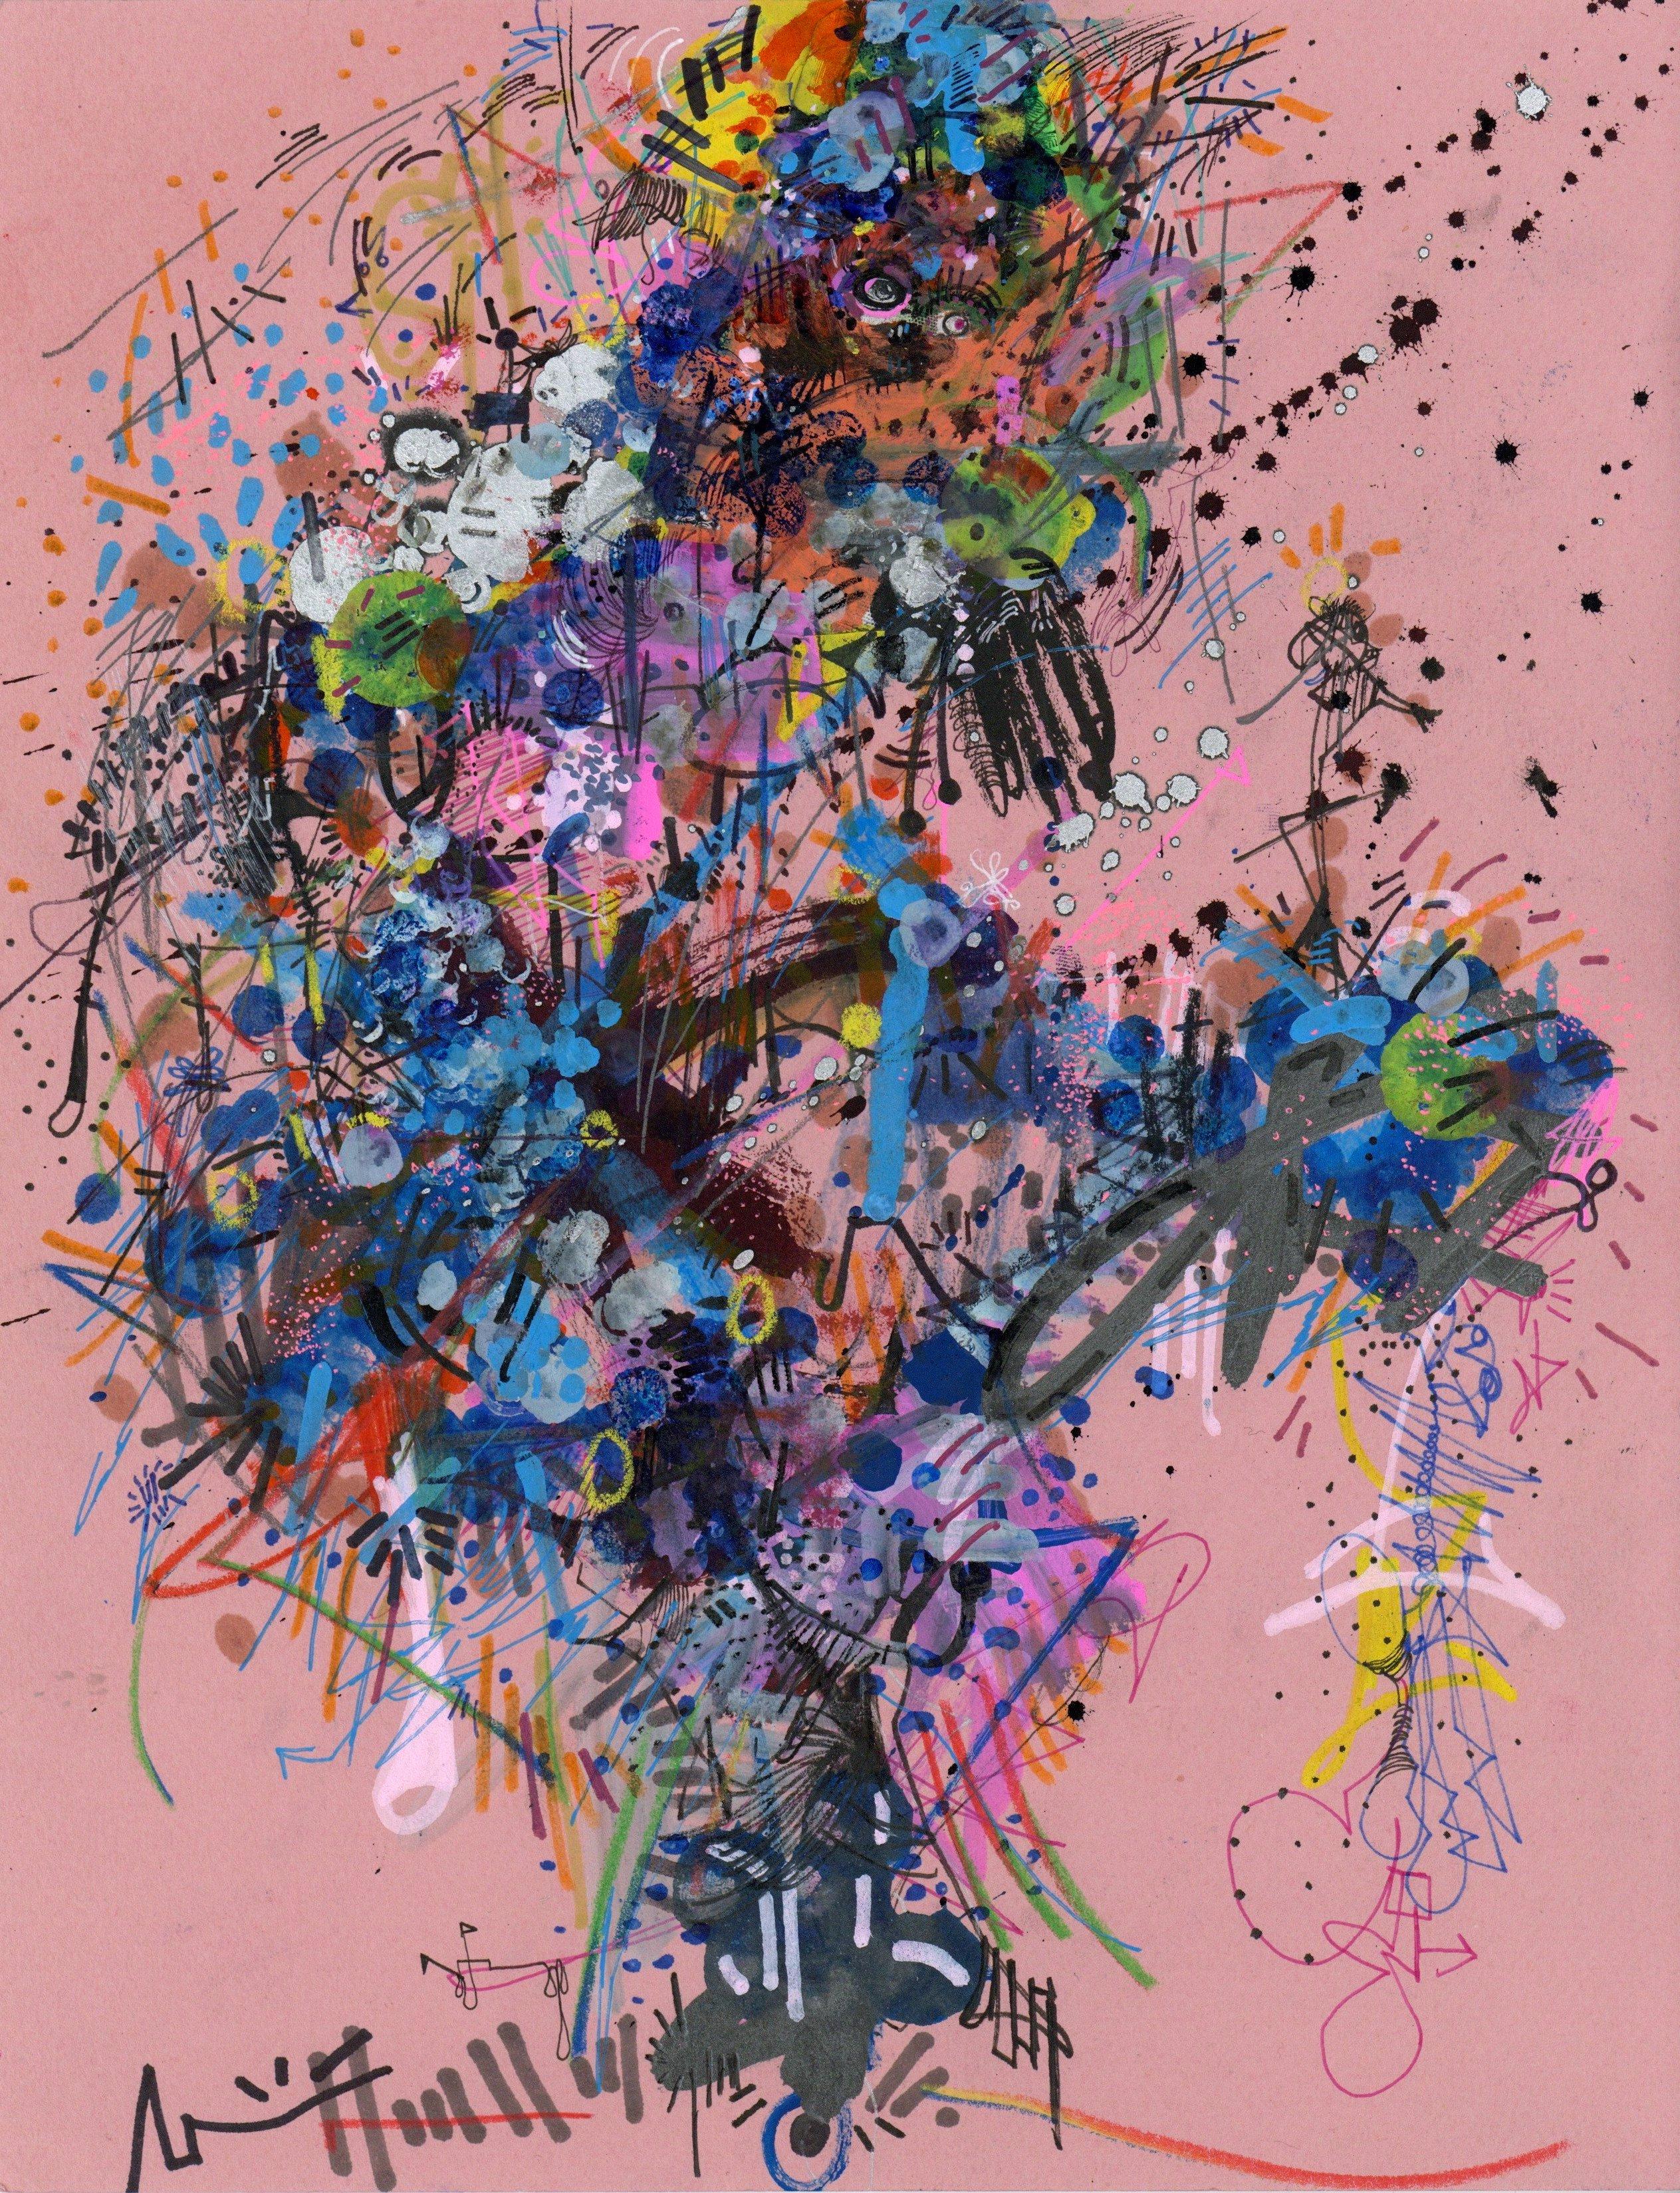 Marqueur, gouache, encre, peinture métallique, crayon de couleur et collage sur papier coloré d'archivage

Michael Alan est un artiste américain né en 1977 qui vit et travaille à New York, aux États-Unis. En tant qu'artiste pluridisciplinaire. Son